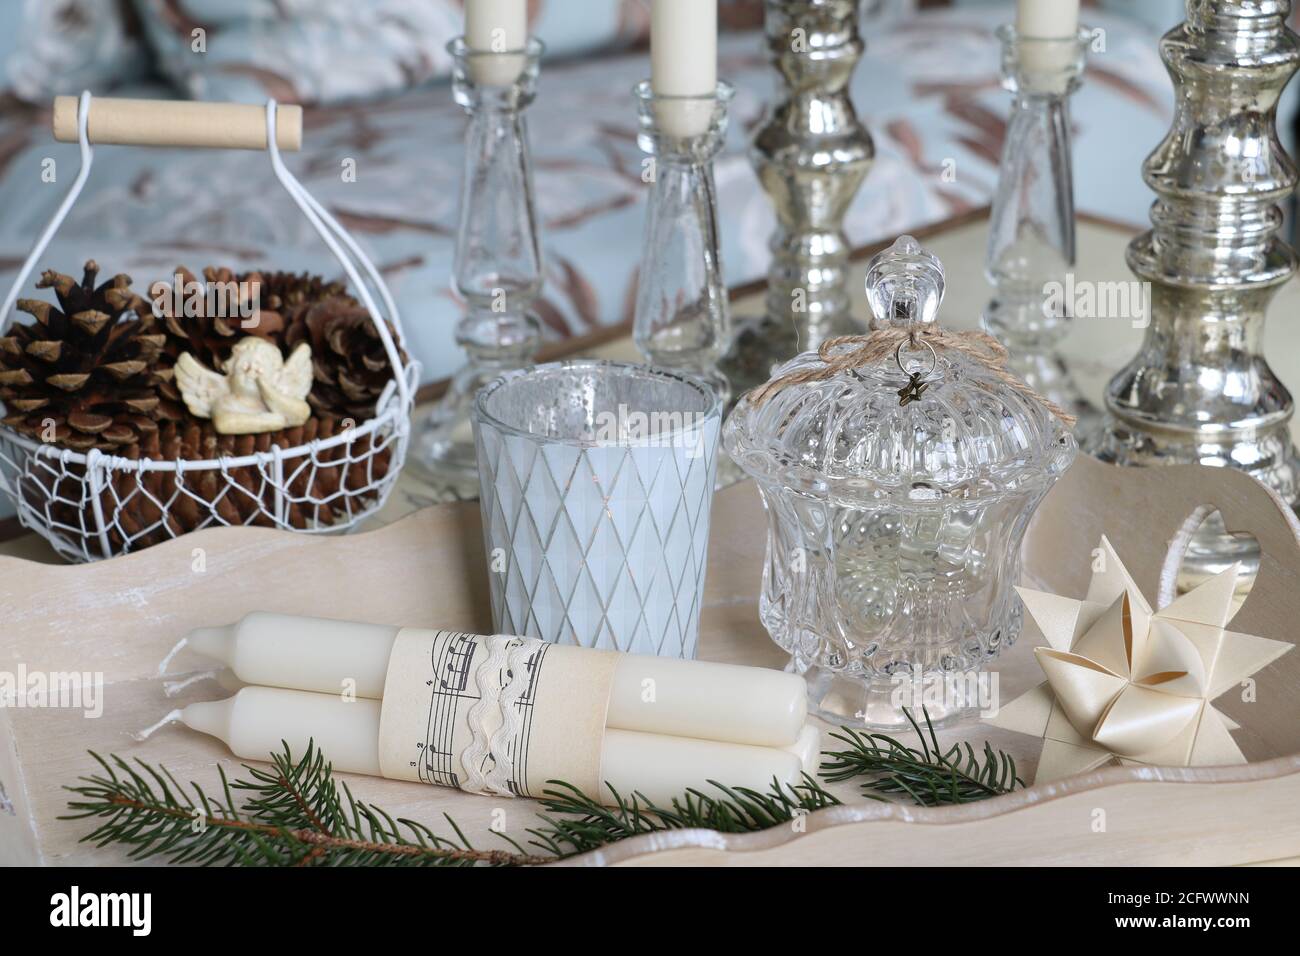 decorazioni natalizie in bianco e argento con cadaveri e coni nel cestino Foto Stock